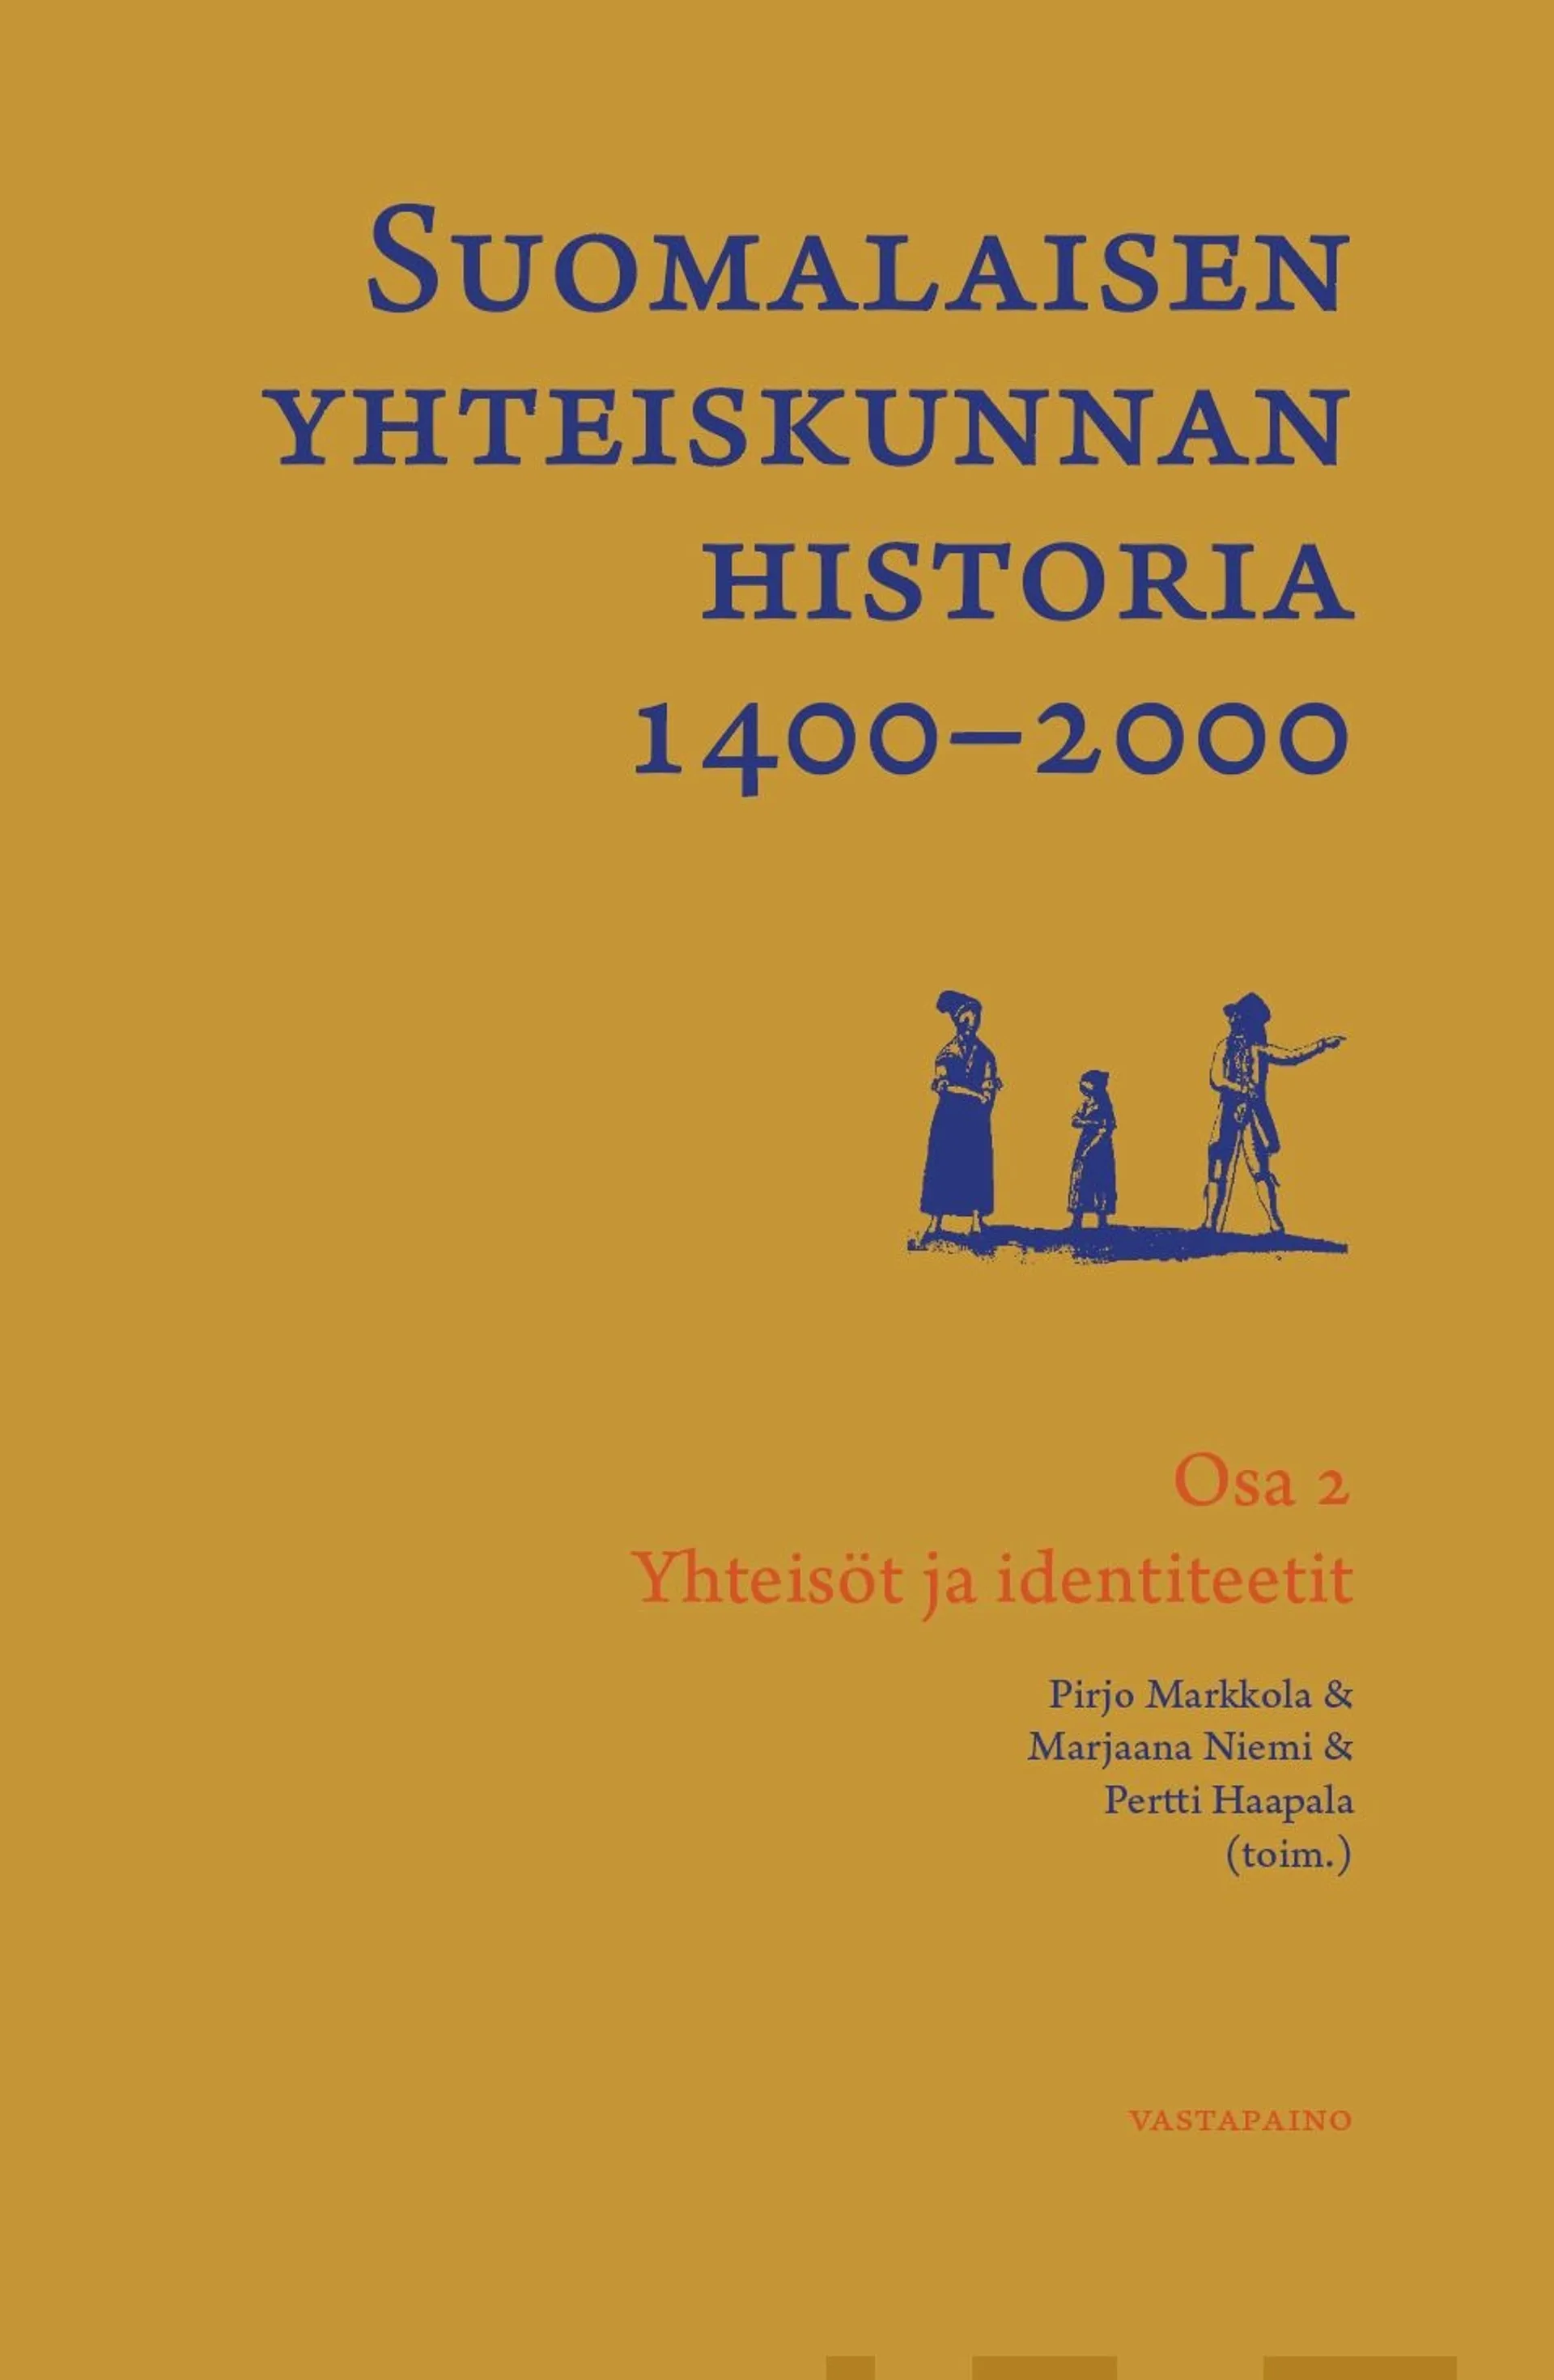 Suomalaisen yhteiskunnan historia 1400-2000 - Osa 2: Yhteisöt ja identiteetit